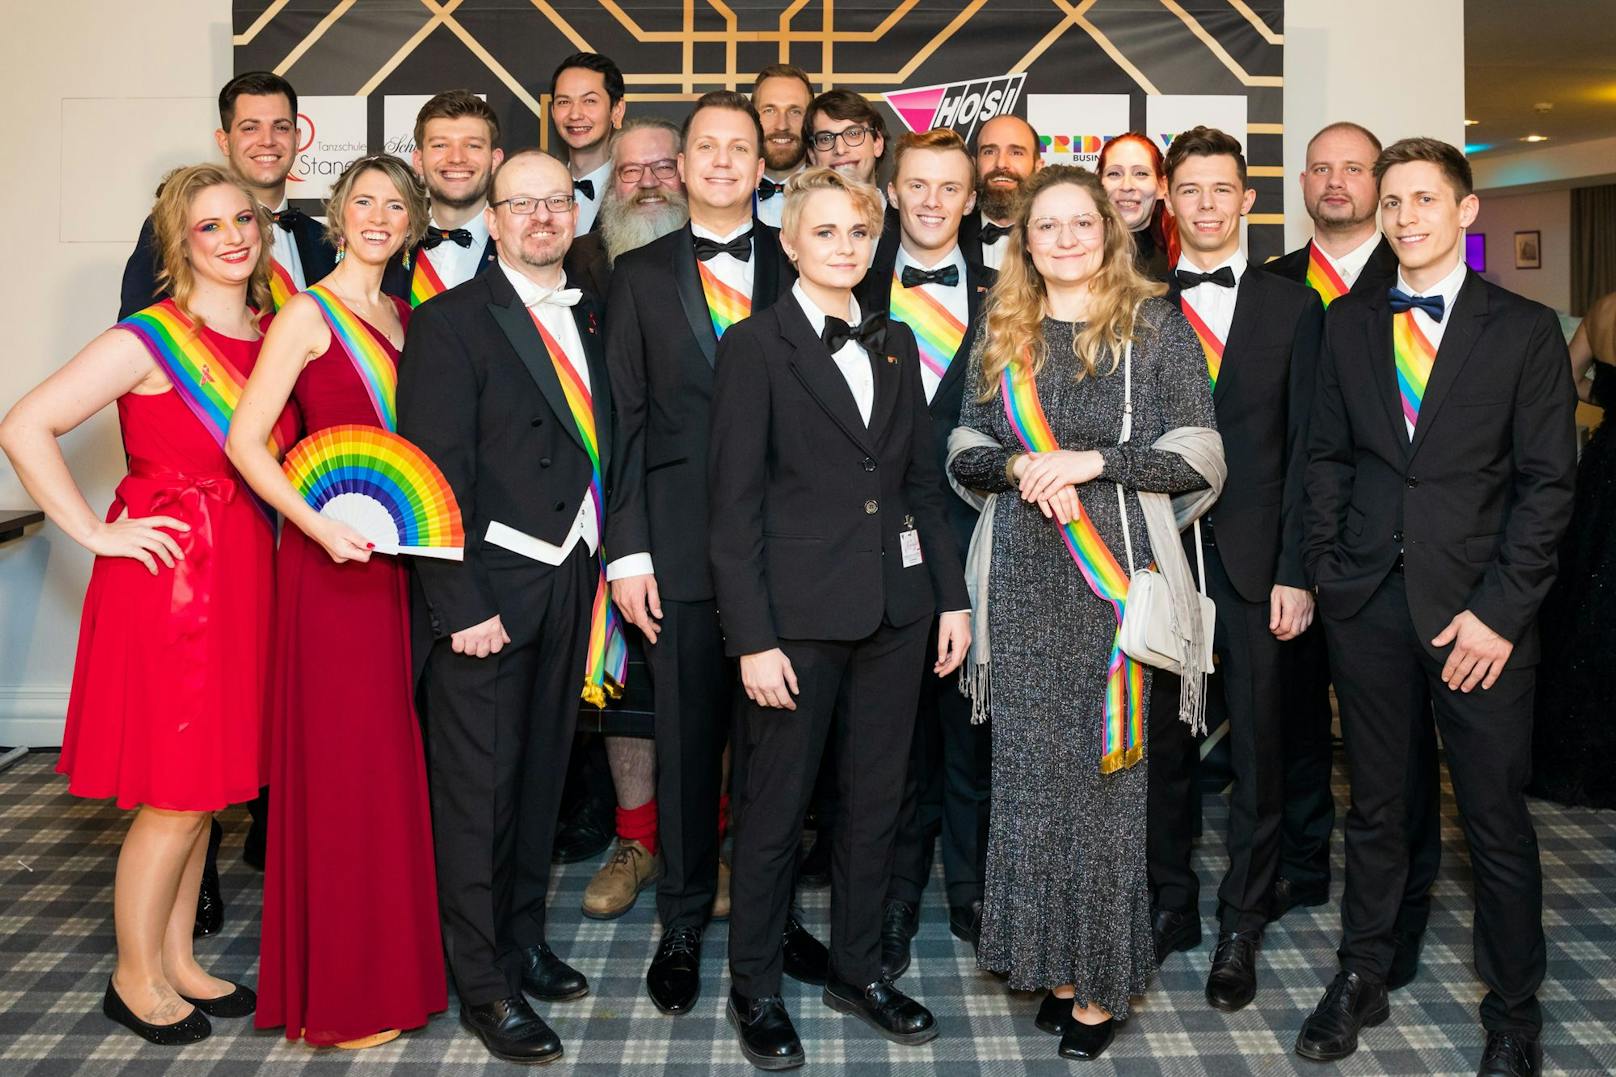 Das Teamfoto der HOSI (Homosexuelle Initiative) Wien